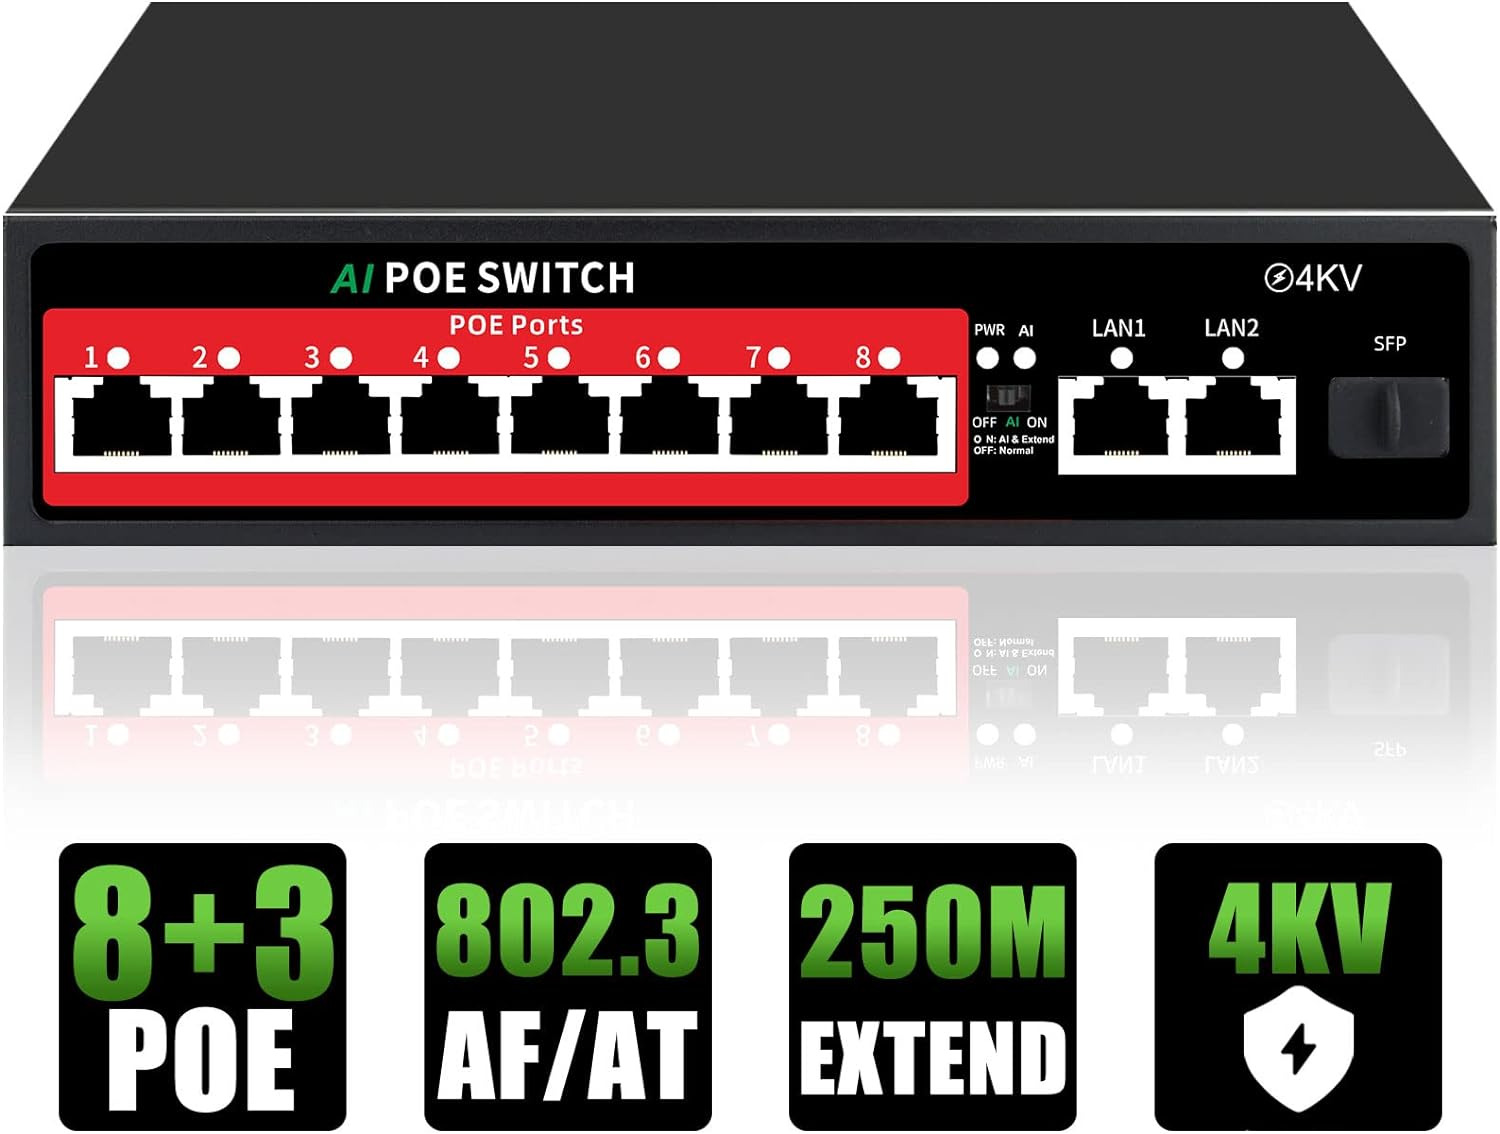 11 Port Ethernet Unmanaged Poe Switch 100W 8 Poe+ Ports@100W 2 Gigabit Uplinks